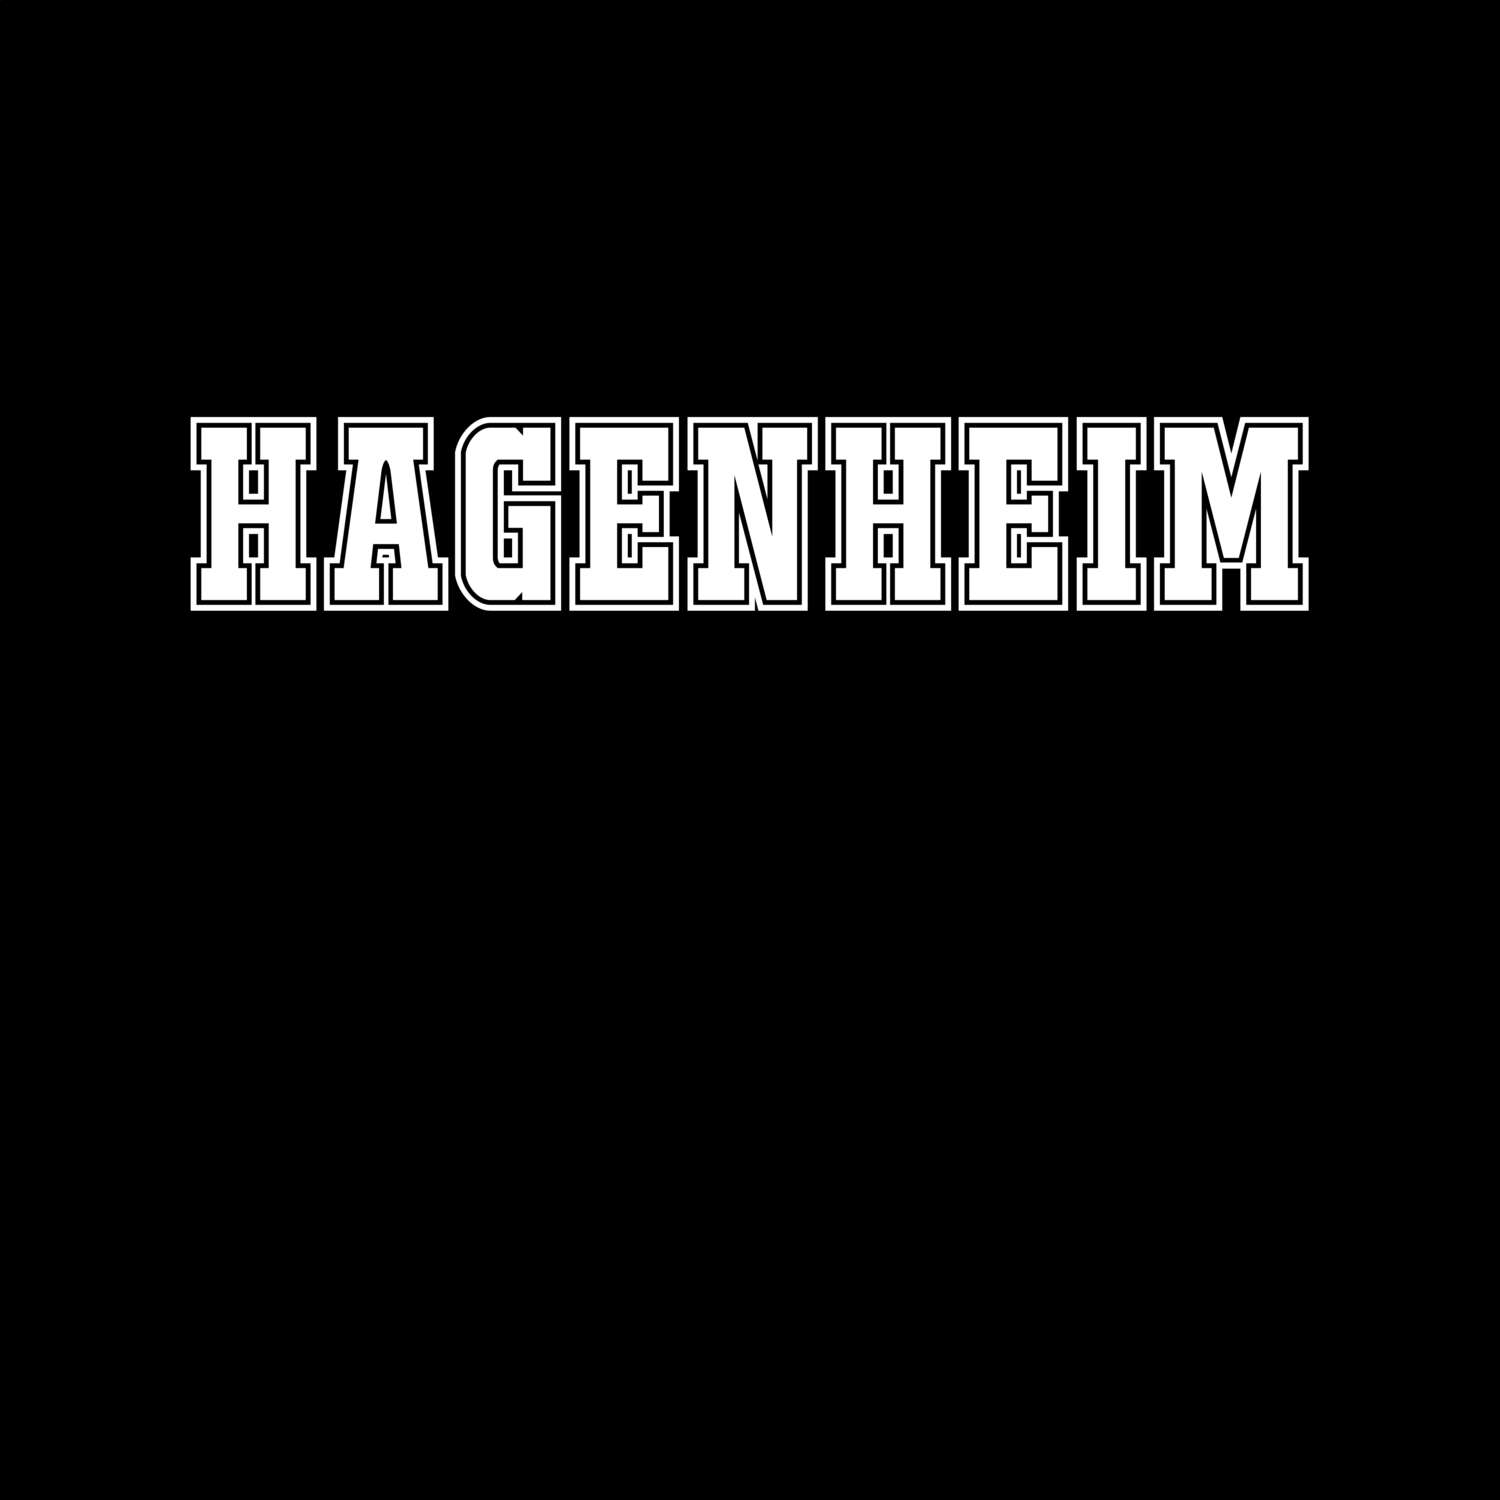 Hagenheim T-Shirt »Classic«